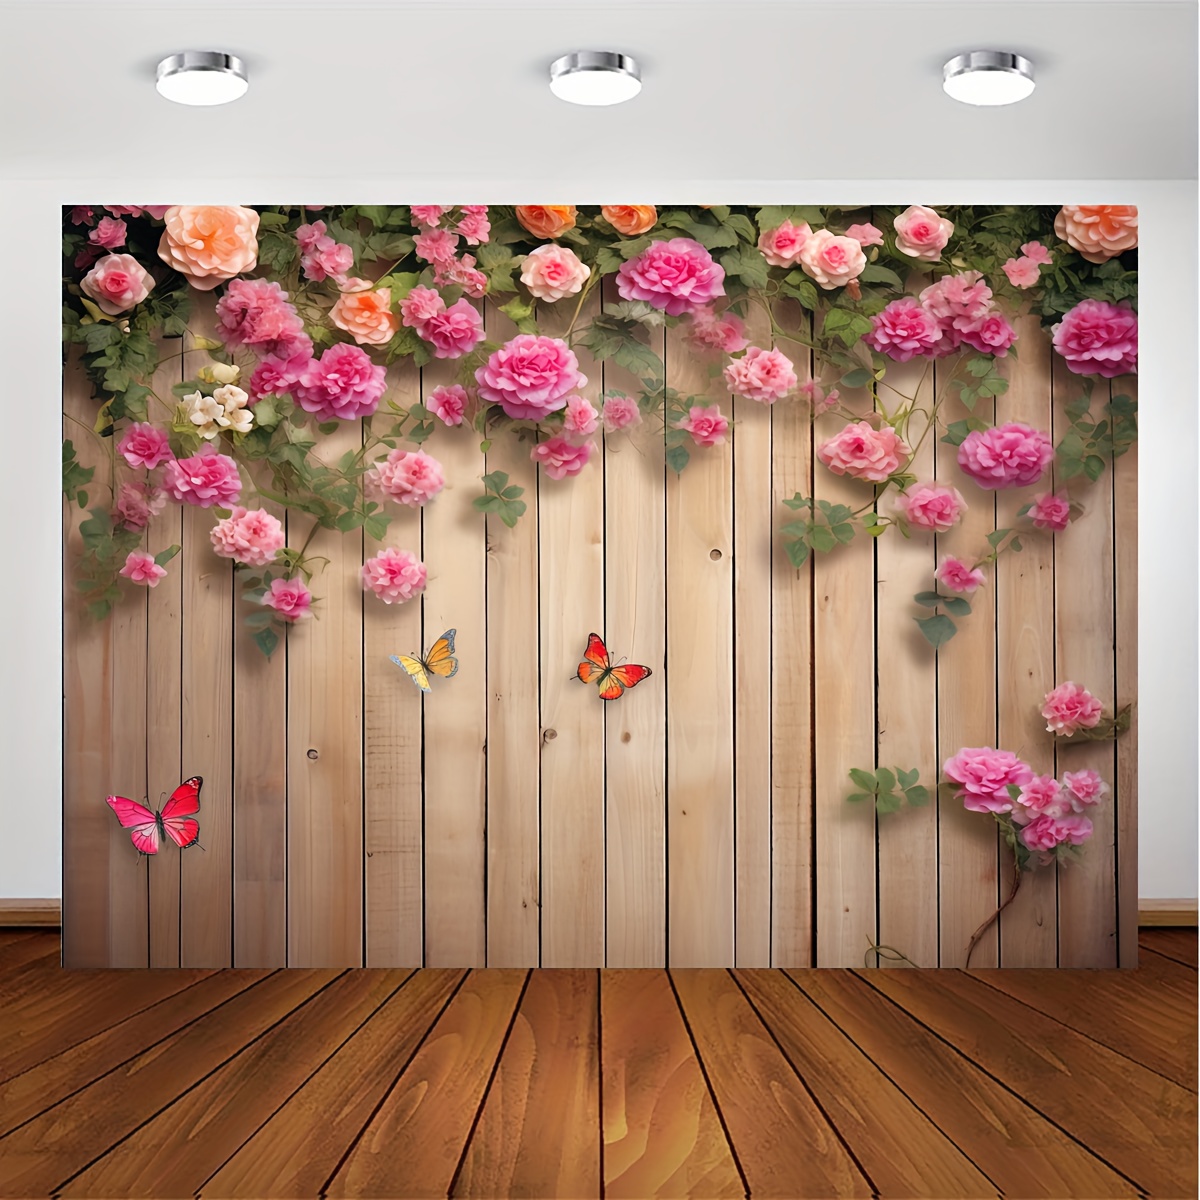 1 telón de fondo para fotografía de pared de madera de 5x3 pies, con flores  de primavera y pétalos para fondo fotográfico de fiesta de cumpleaños, acc